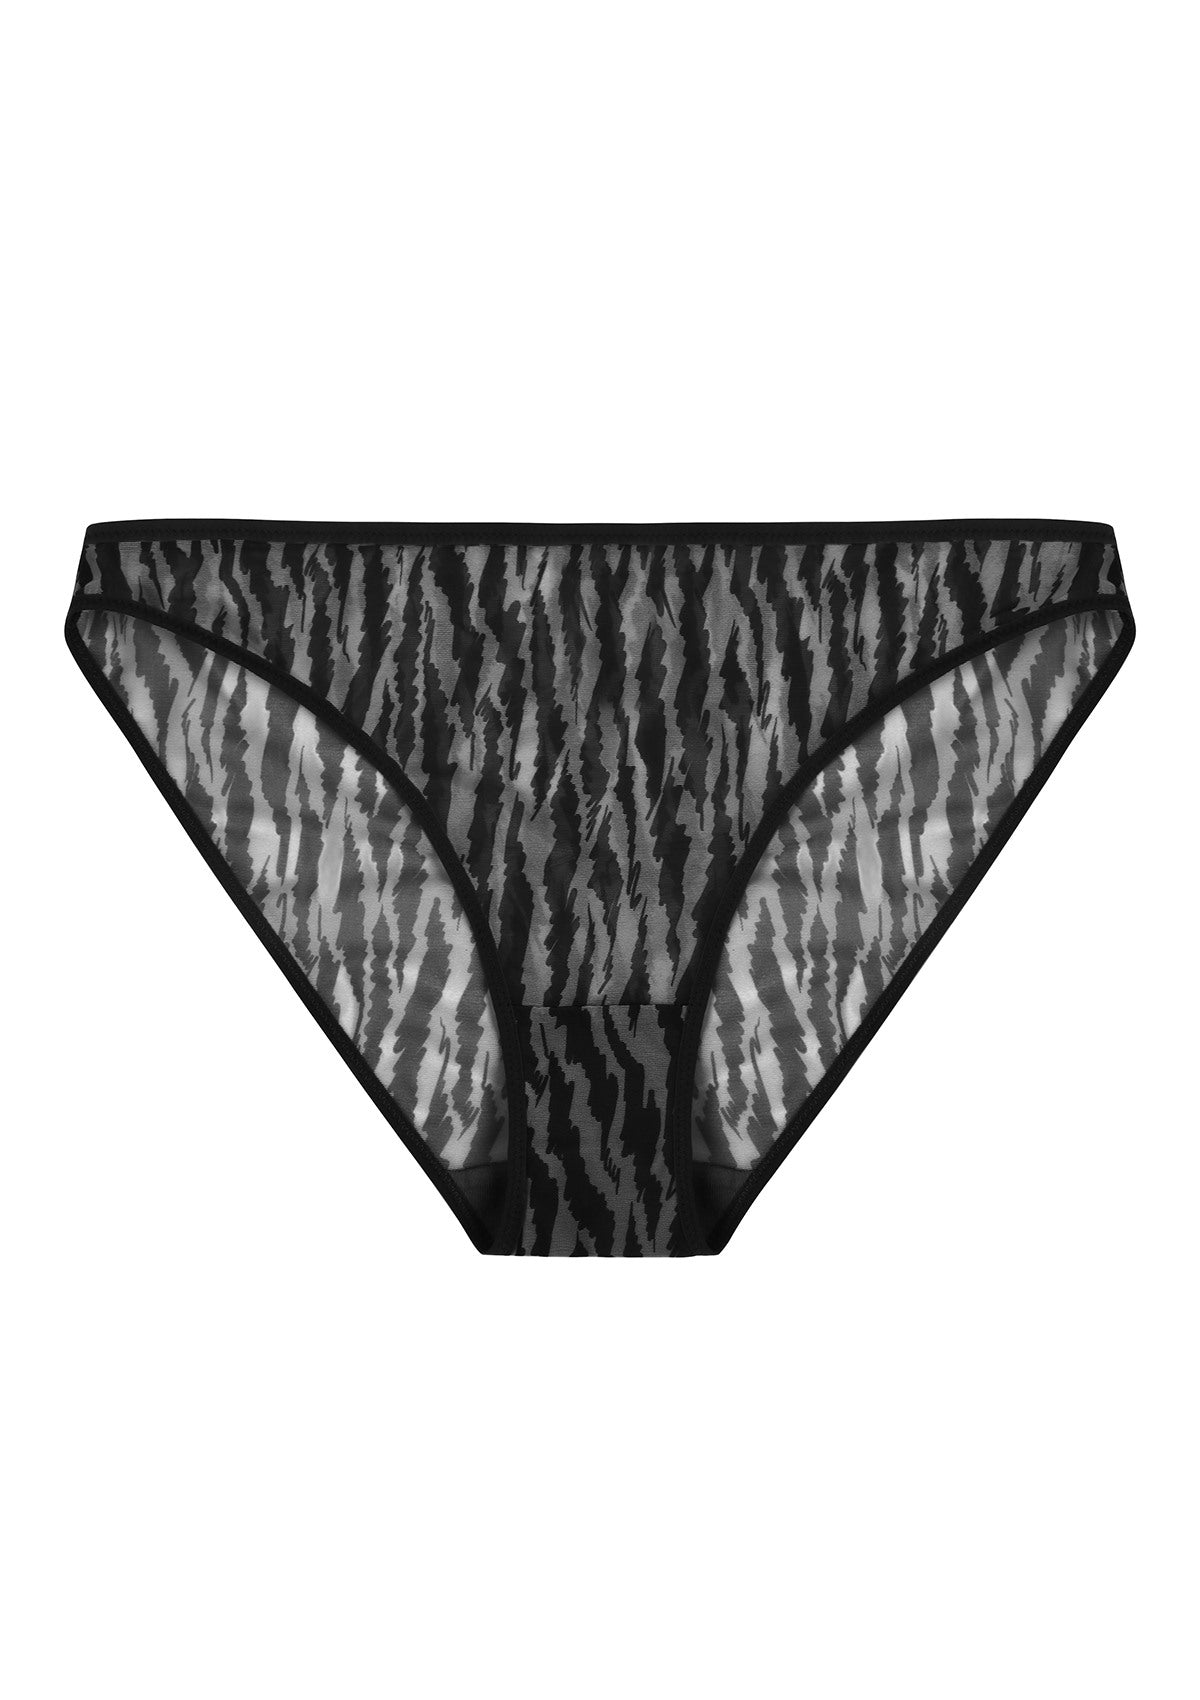 HSIA Breathable Sexy Feminine Lace Mesh Bikini Underwear - M / Black